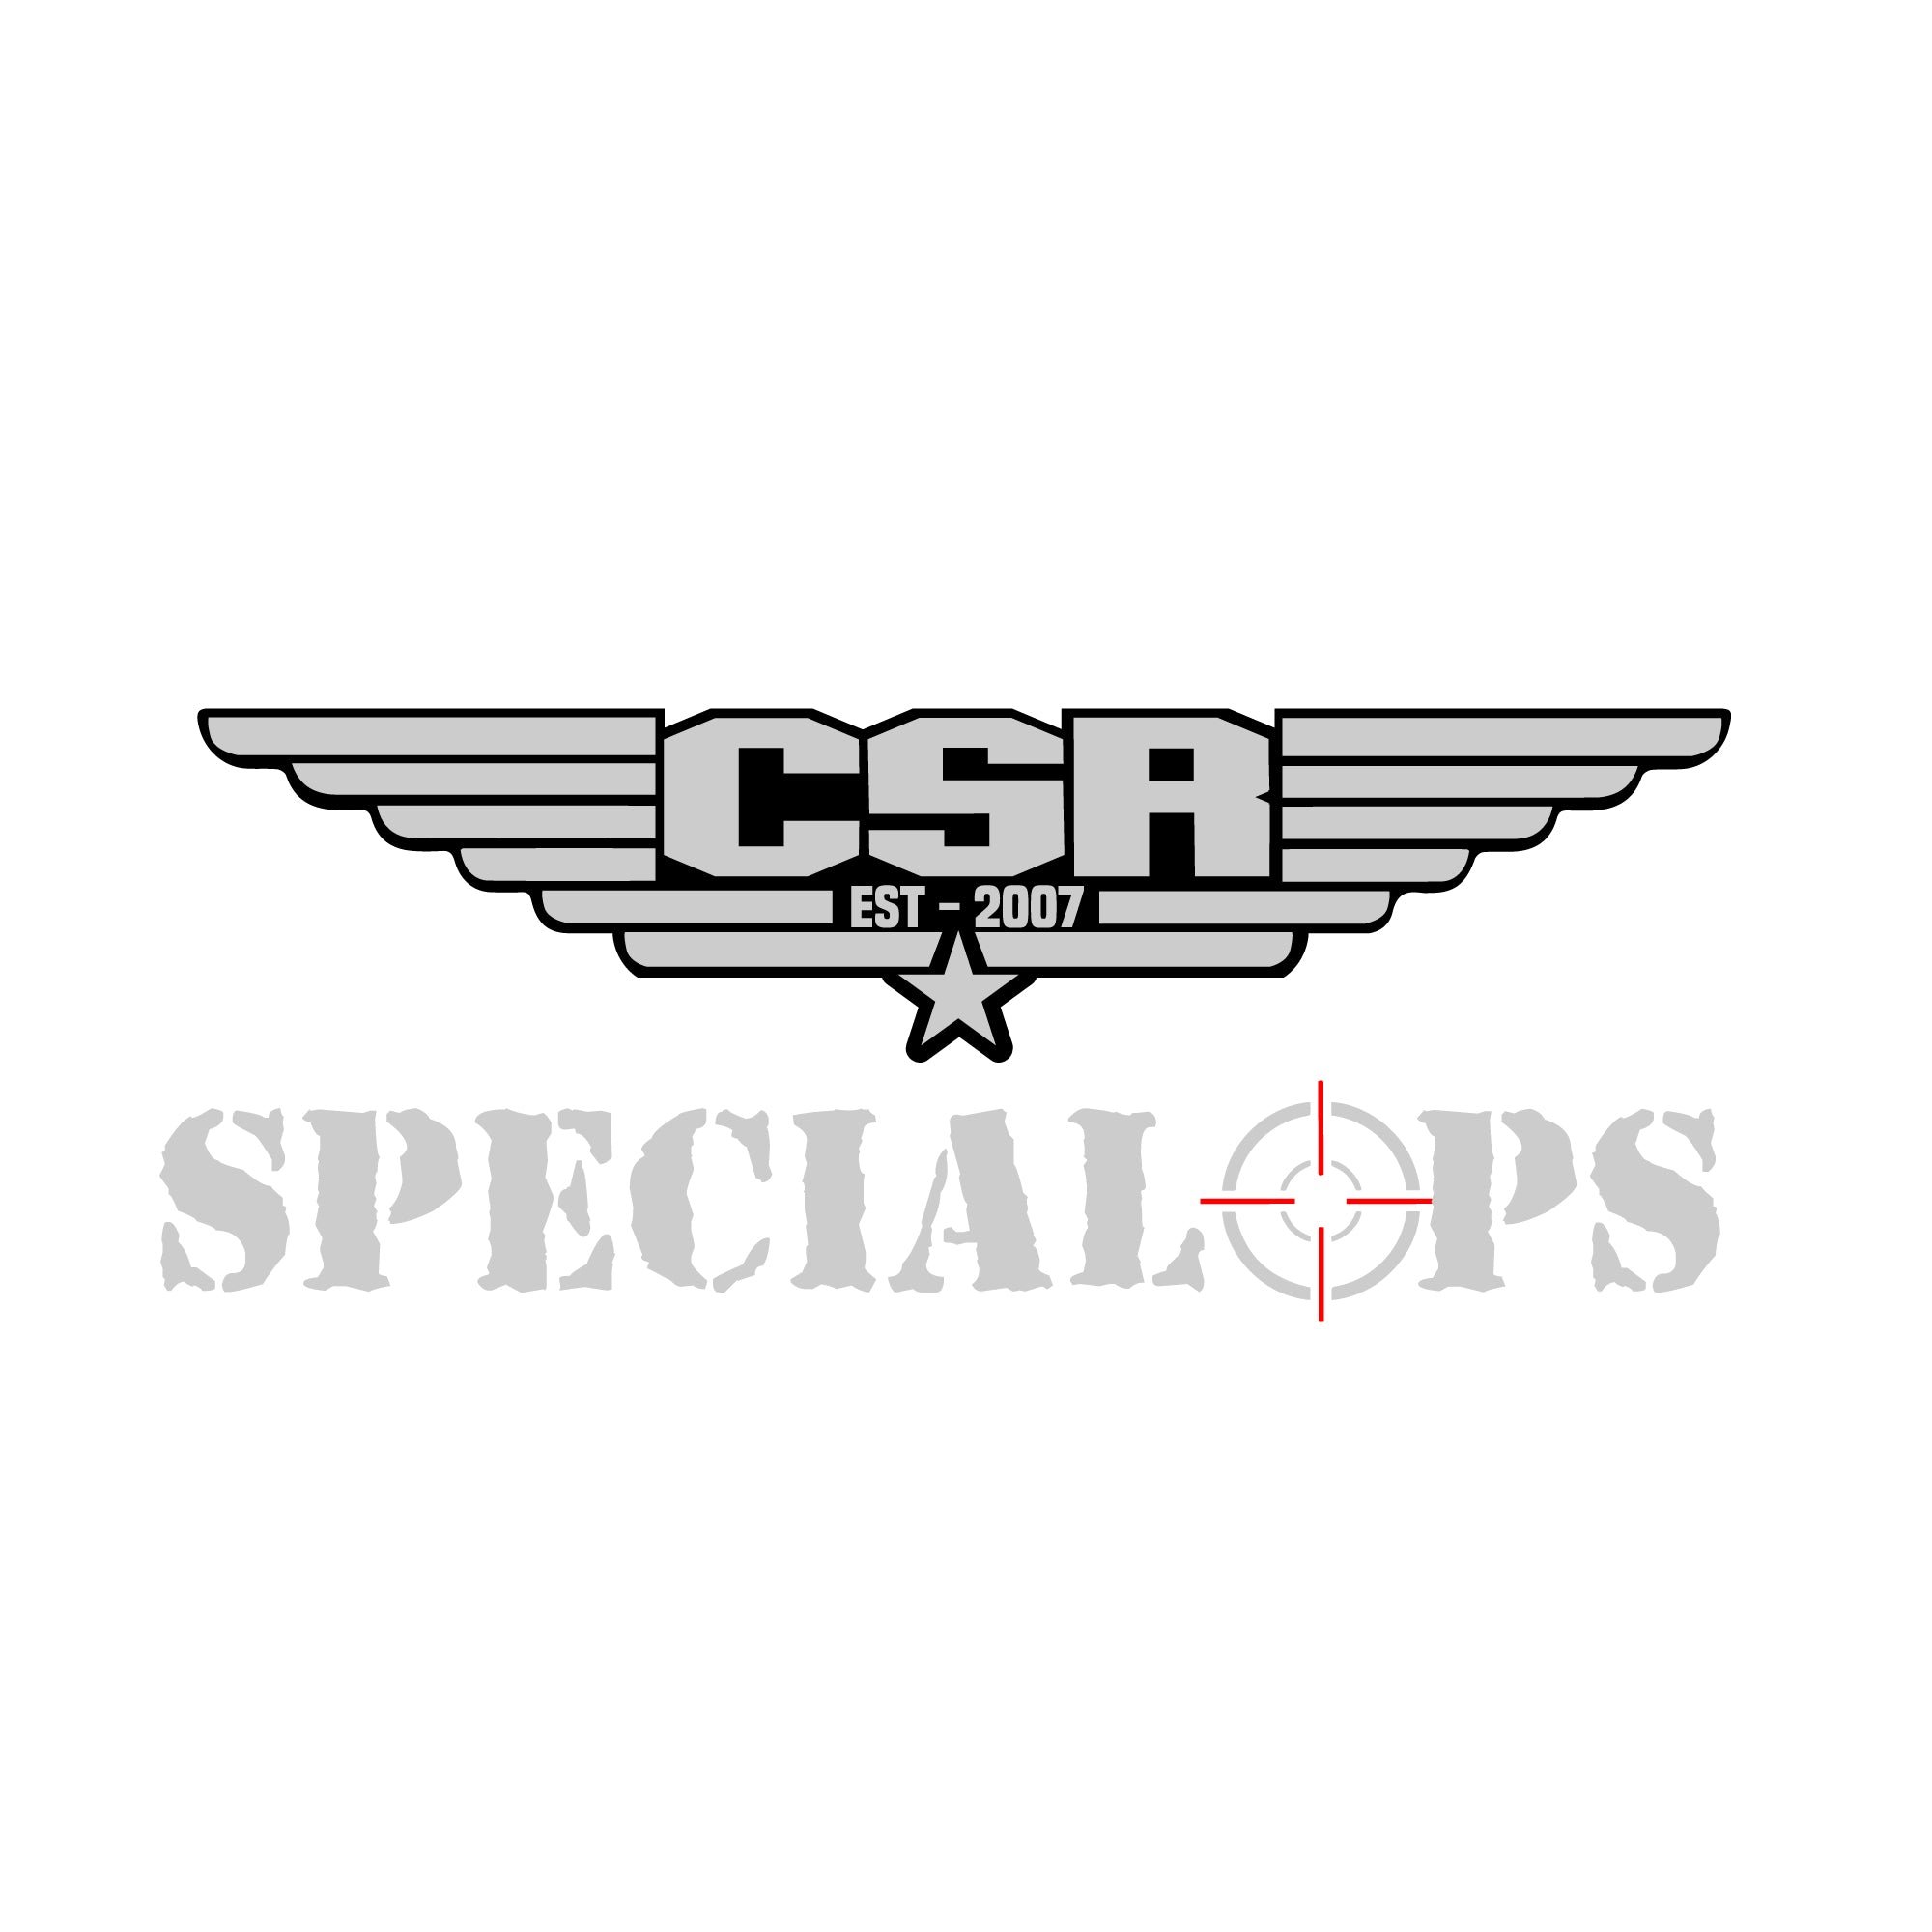 Conjunto de operaciones especiales de Columbia (exclusivo de CSR)